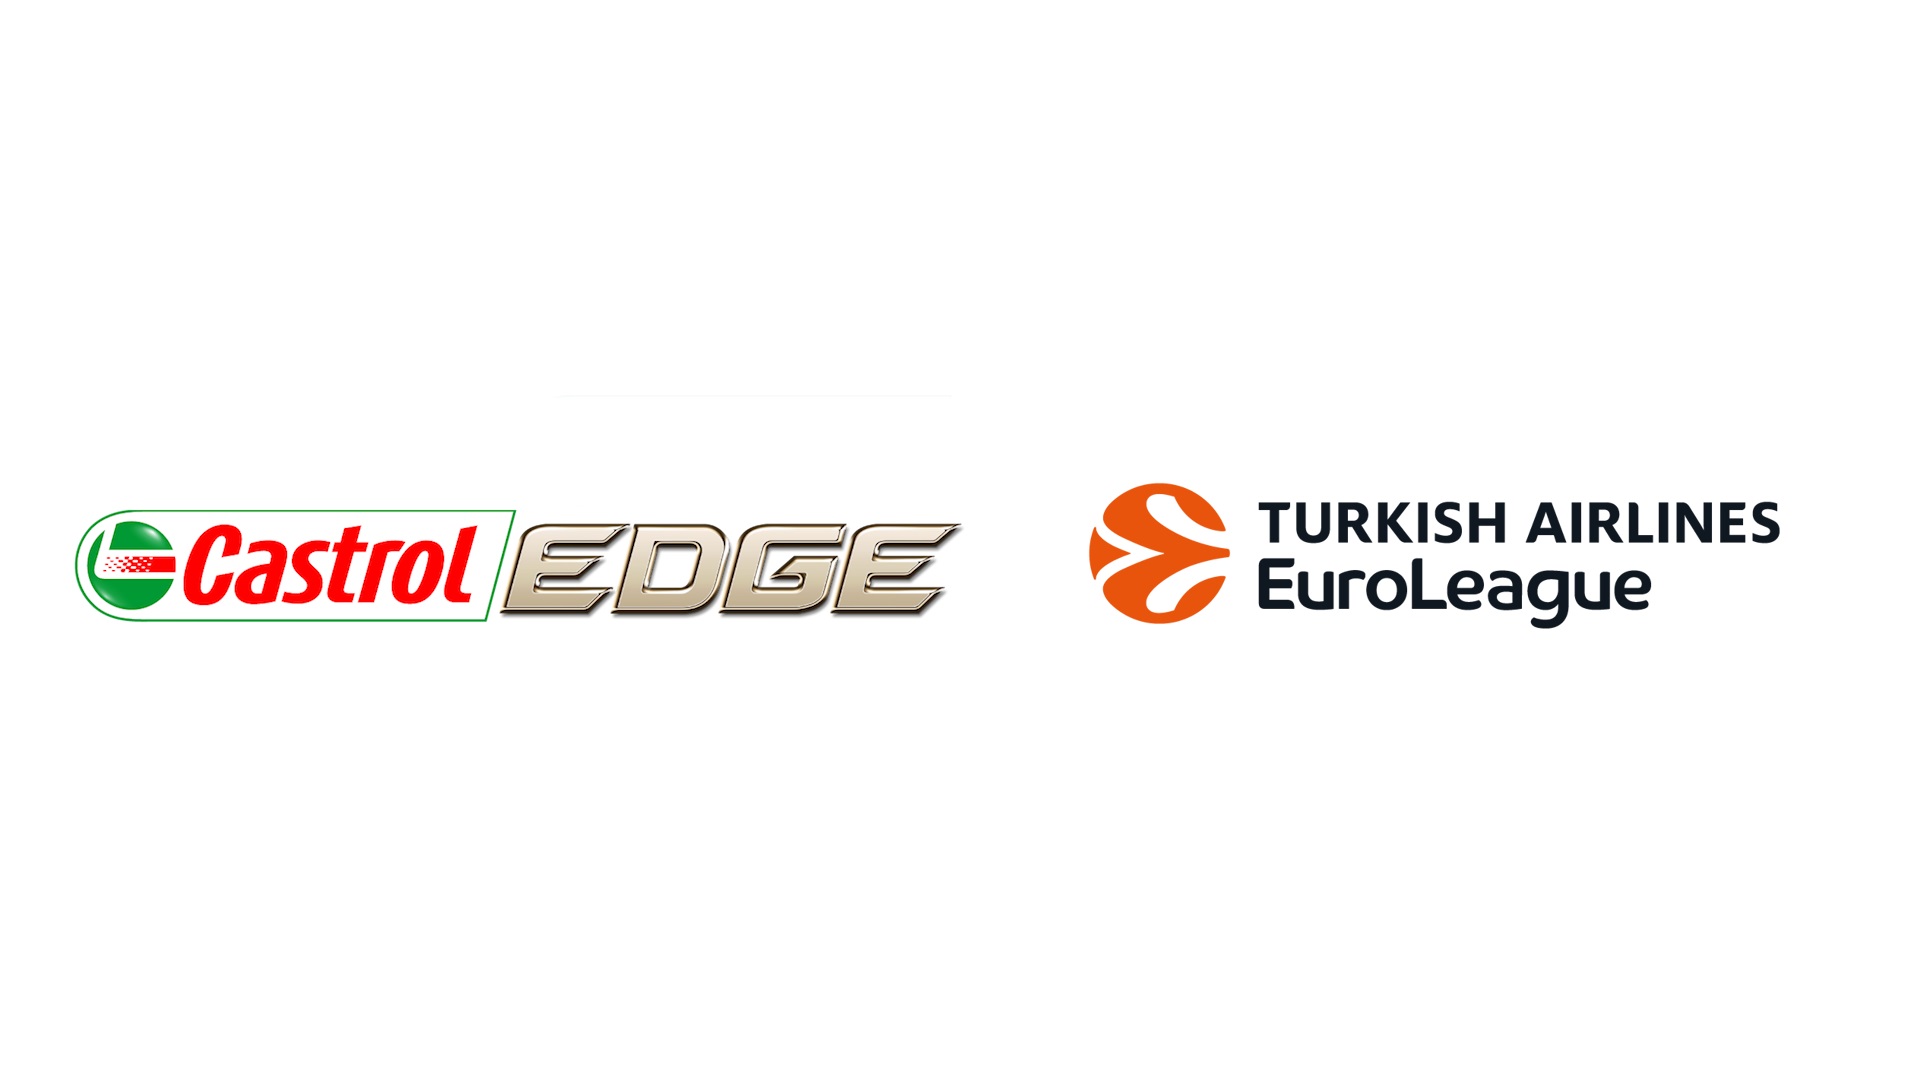 Turkish Airlines Euroleague resmi içerik partneri Castrol EDGE ile ‘Baskıyı Kes’